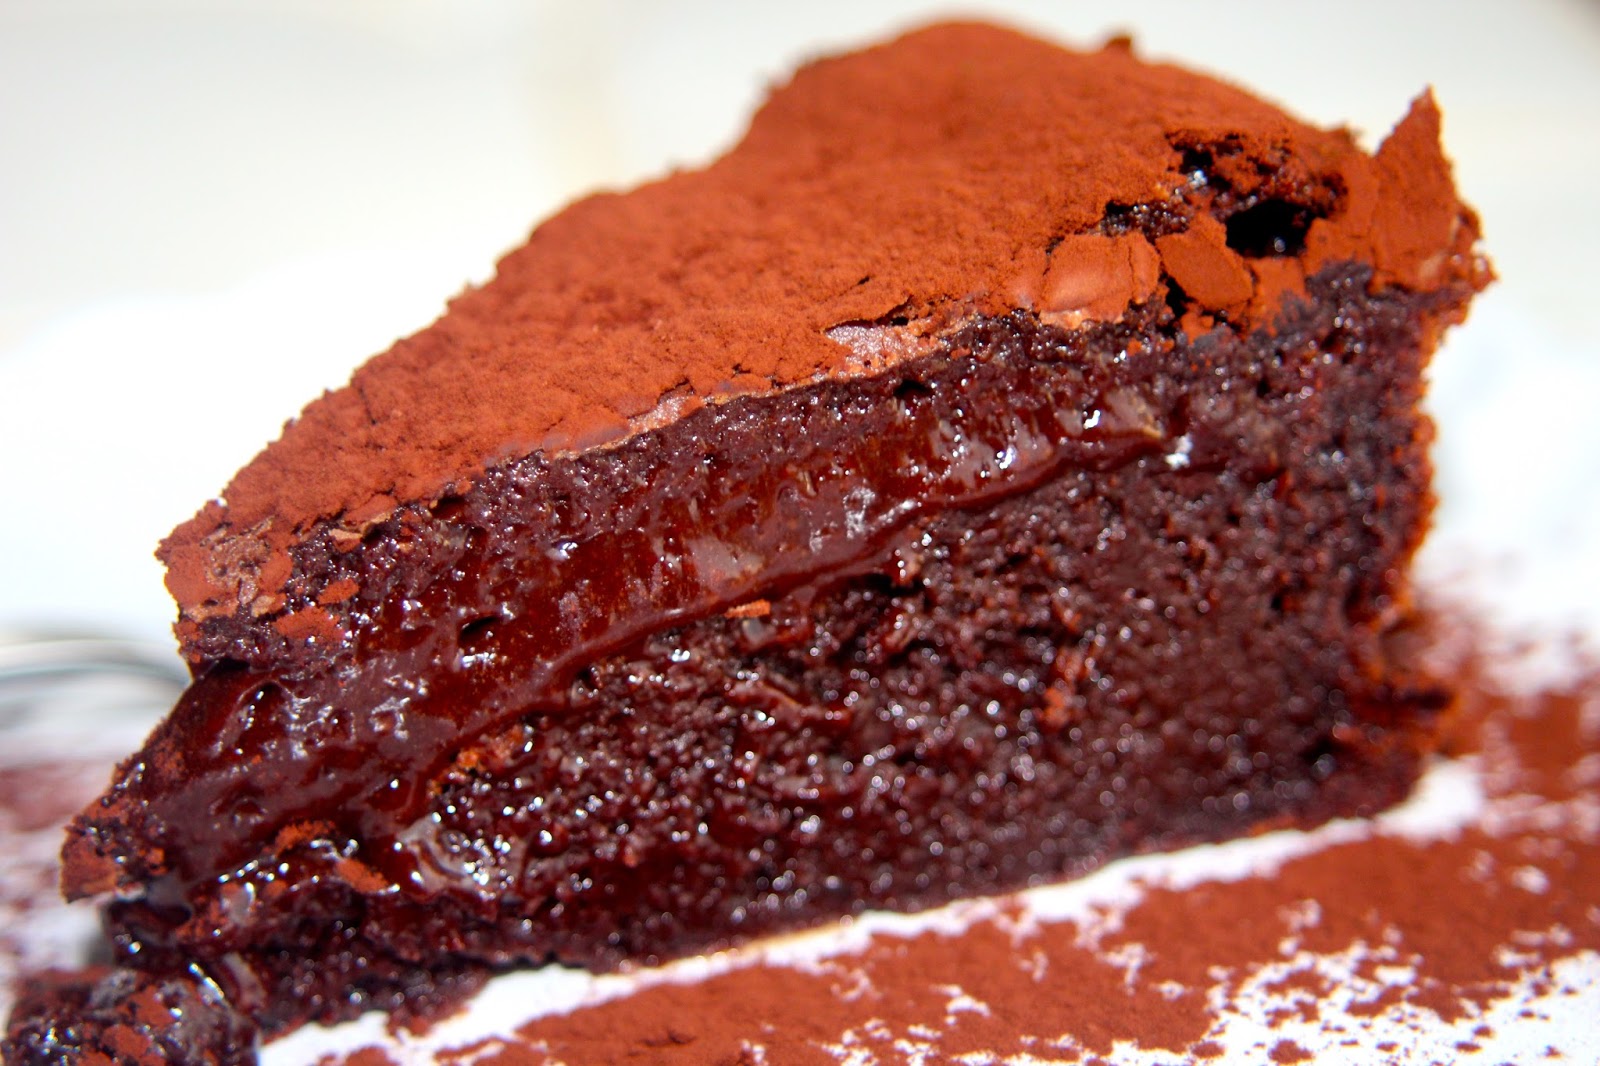 Paulas Frauchen: Zart schmelzender Schokoladenkuchen